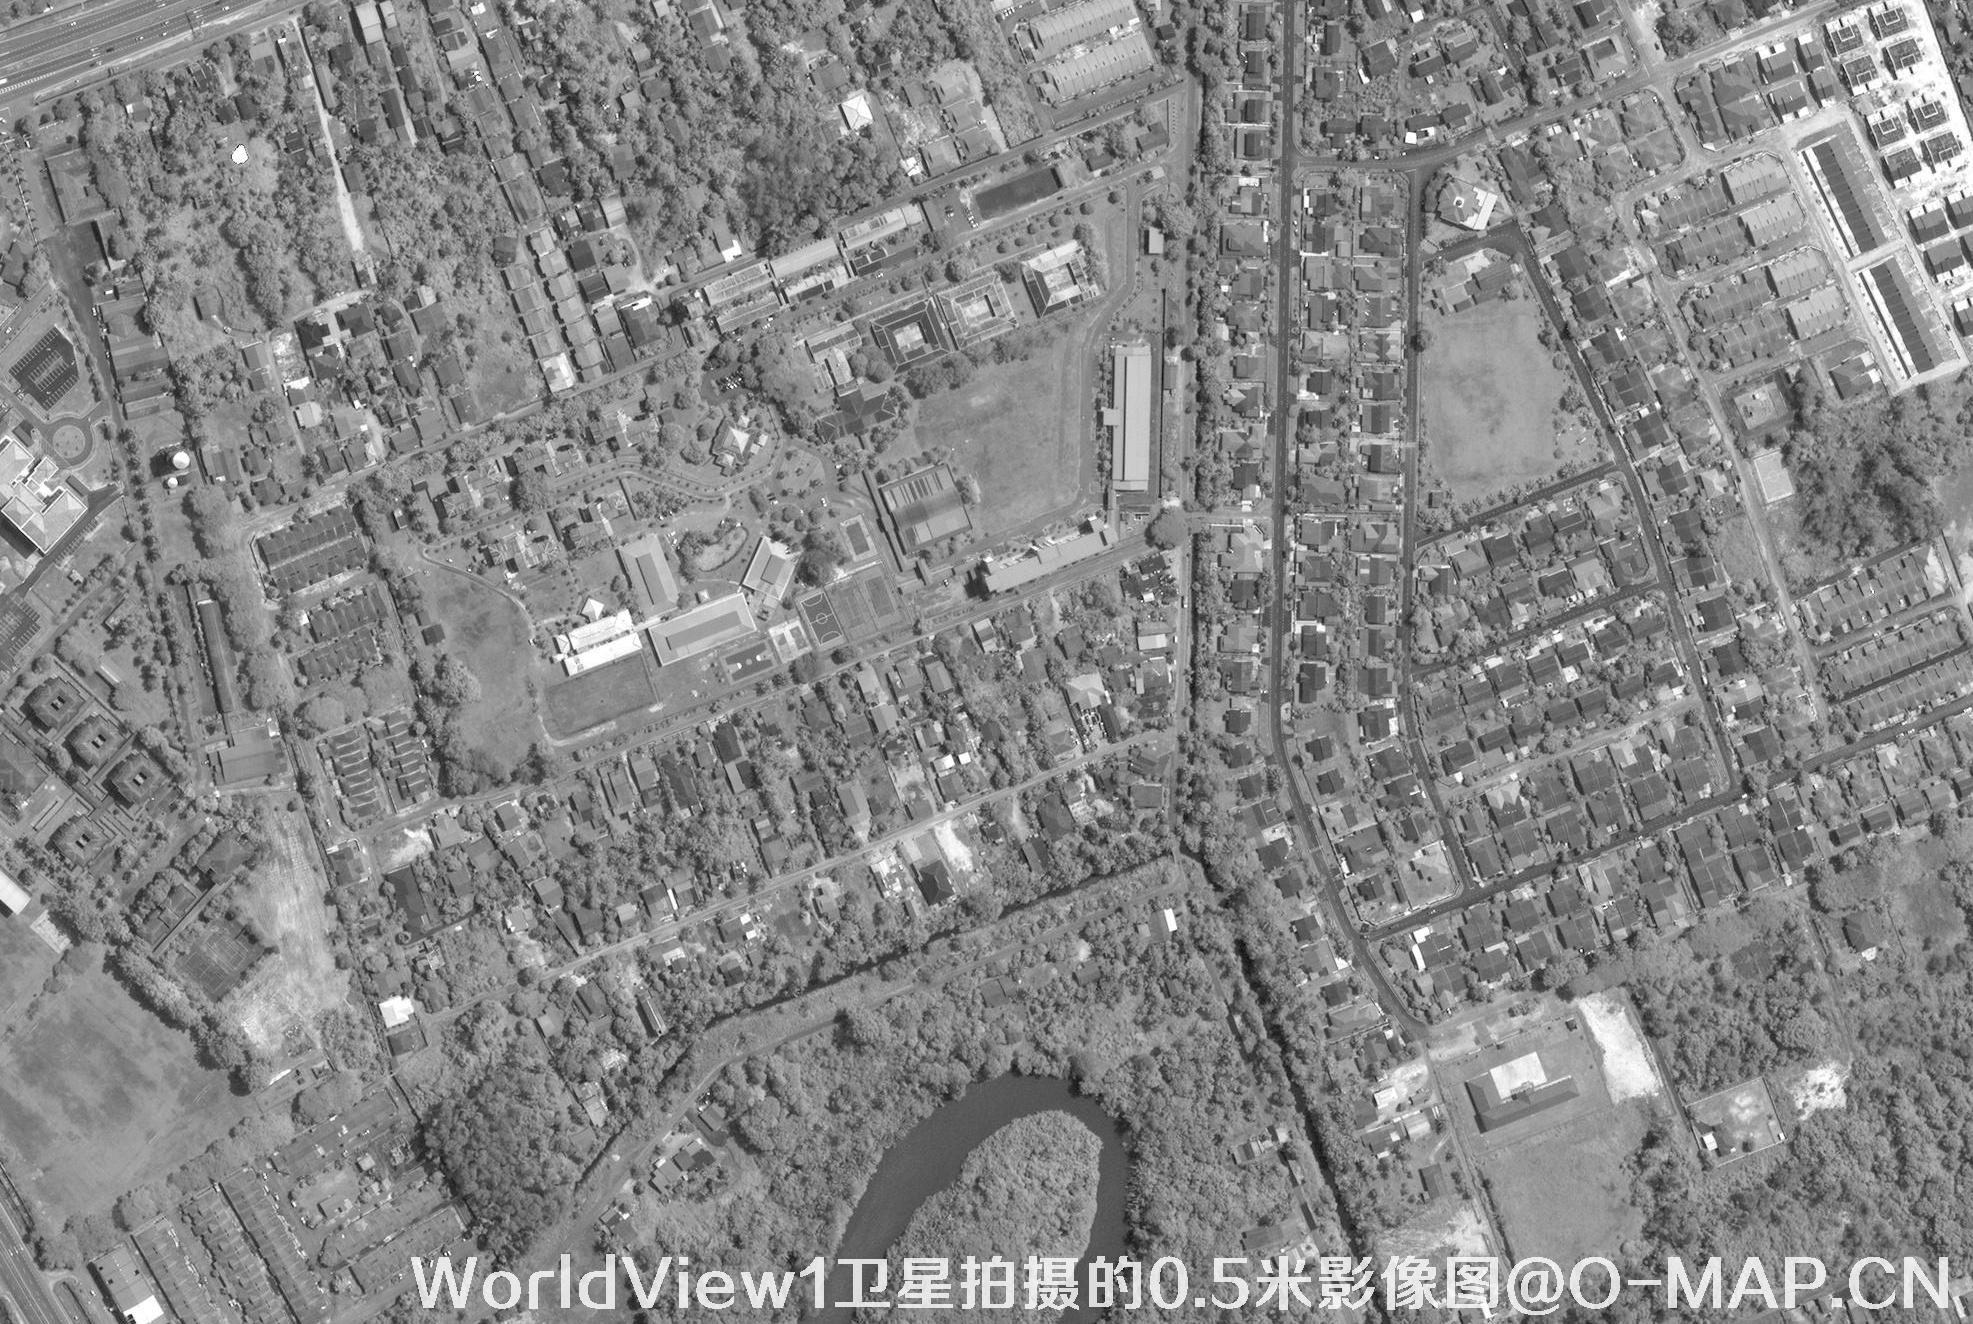 WorldView1卫星拍摄的0.5米分辨率卫星图